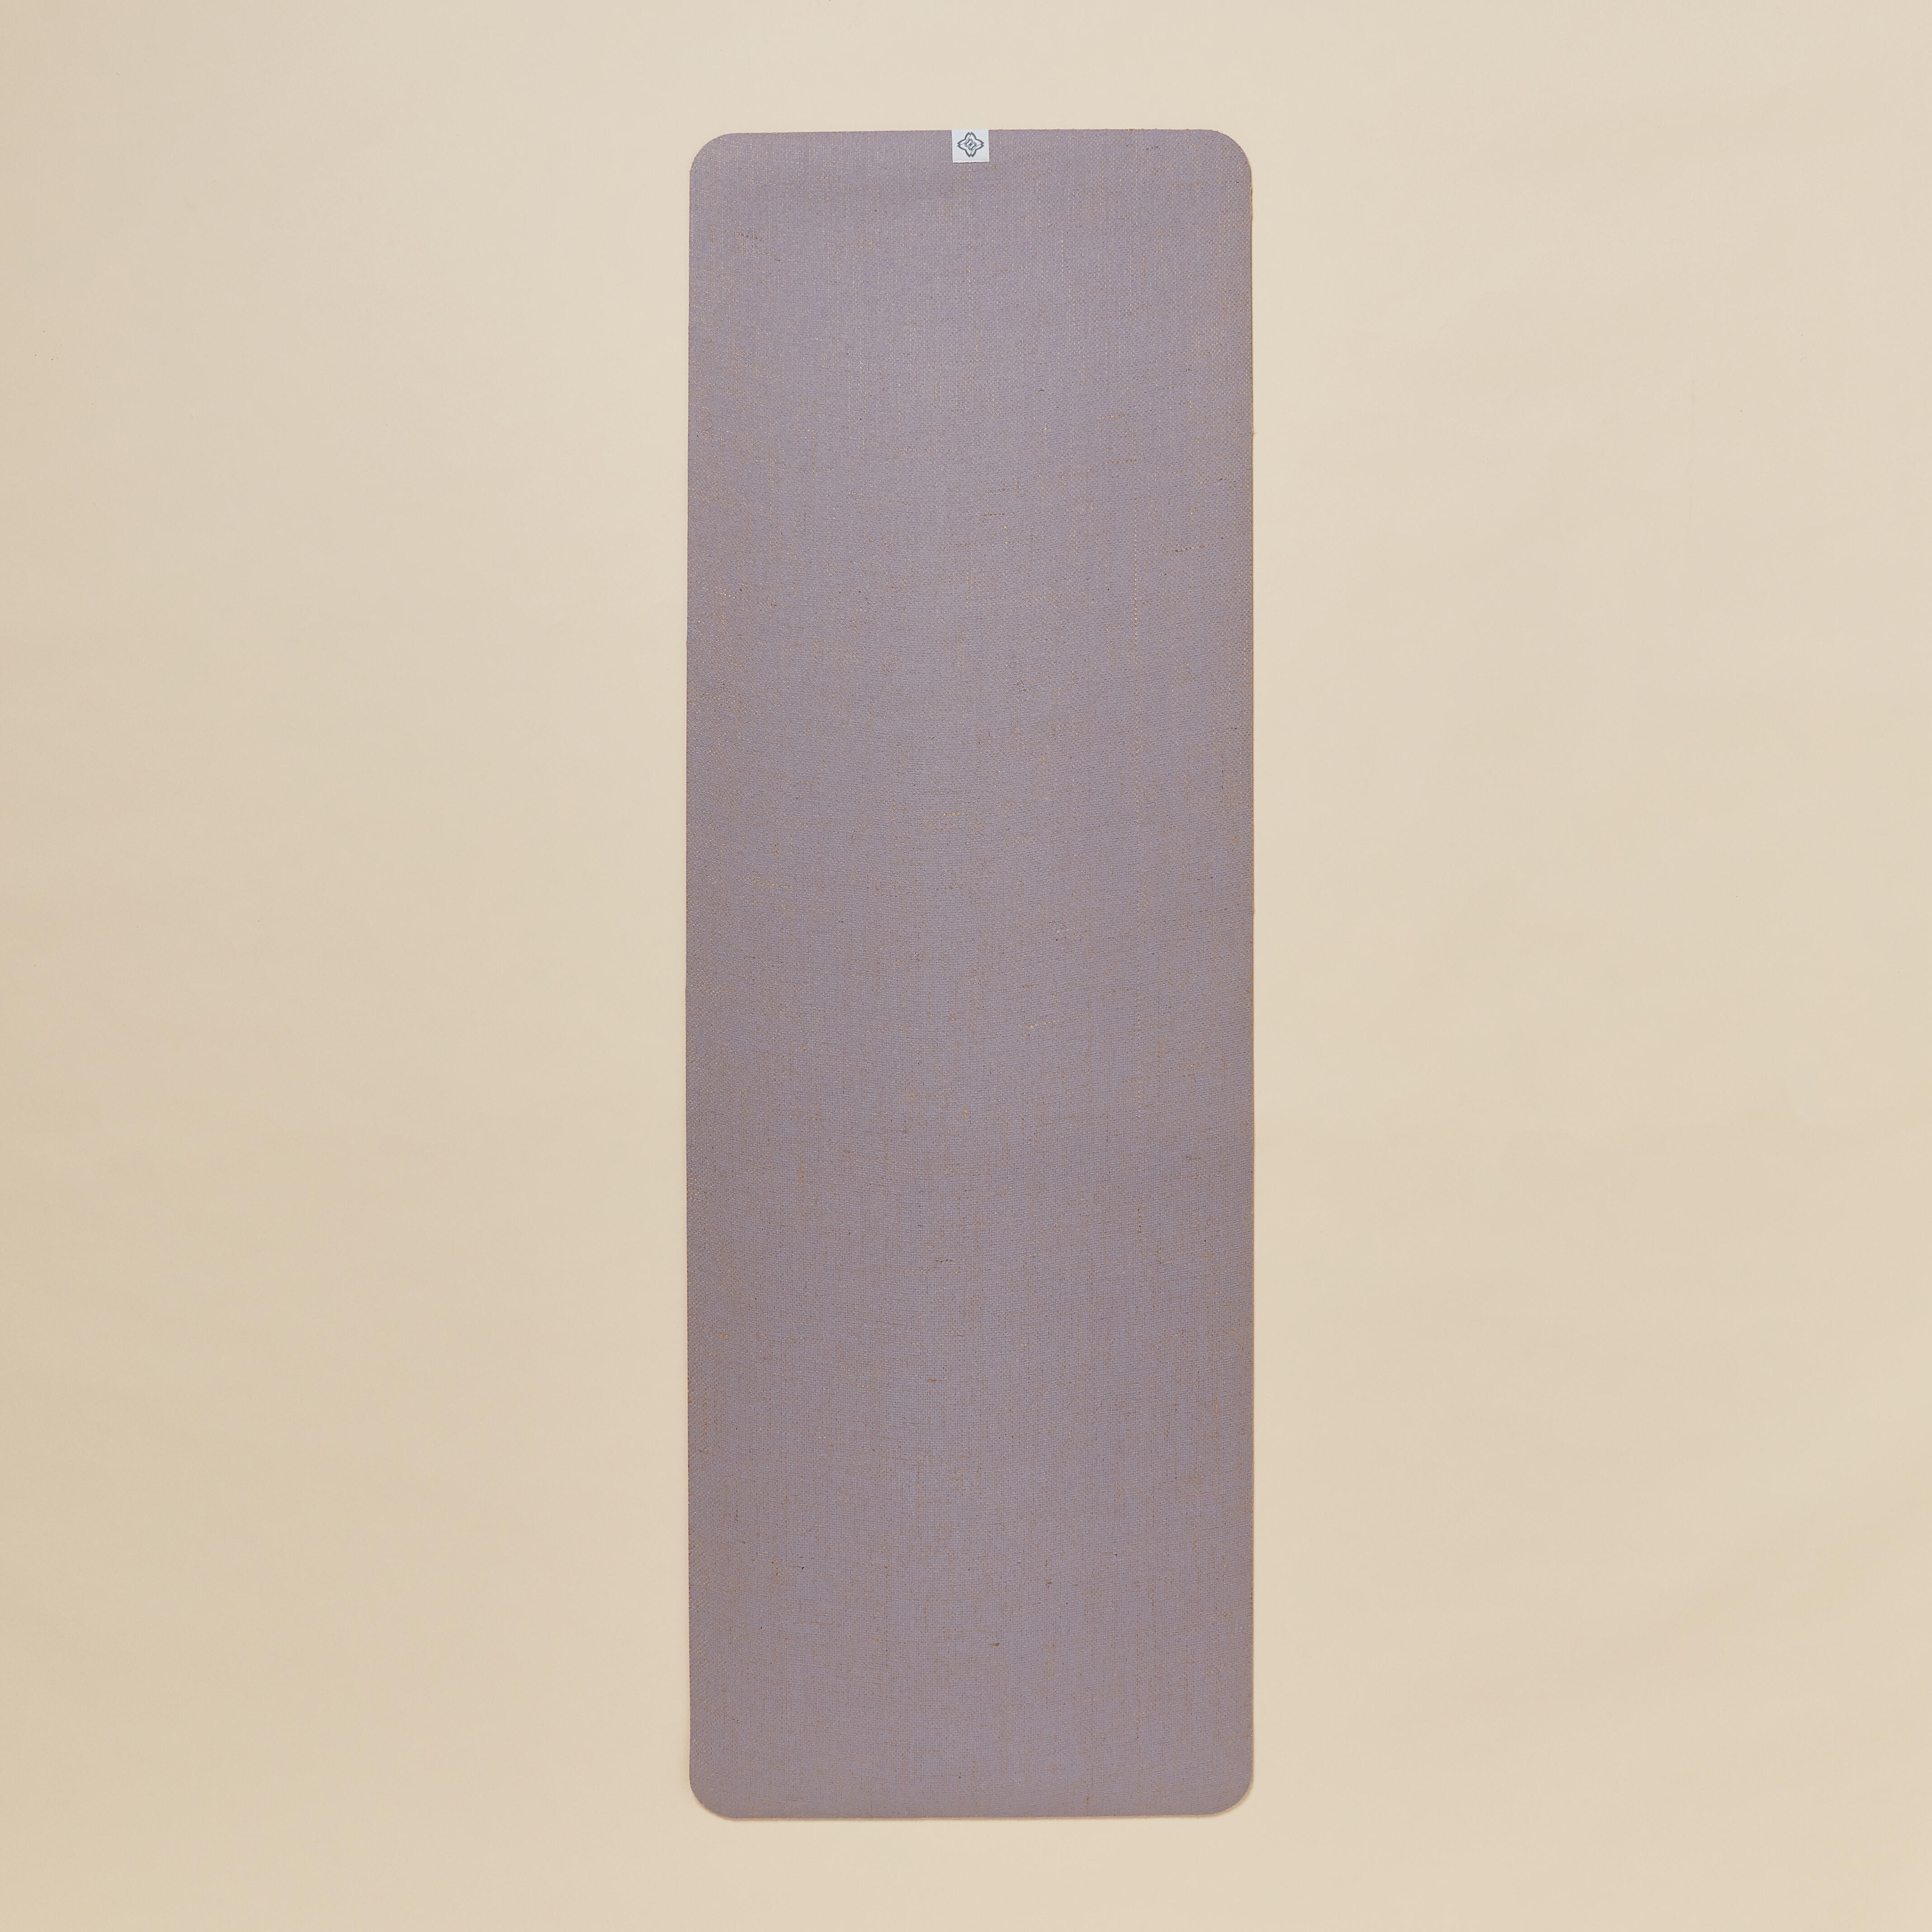 Saltea Yoga Cauciuc/ iută 183 cm x 61 cm x 4 mm Mov 183 imagine 2022